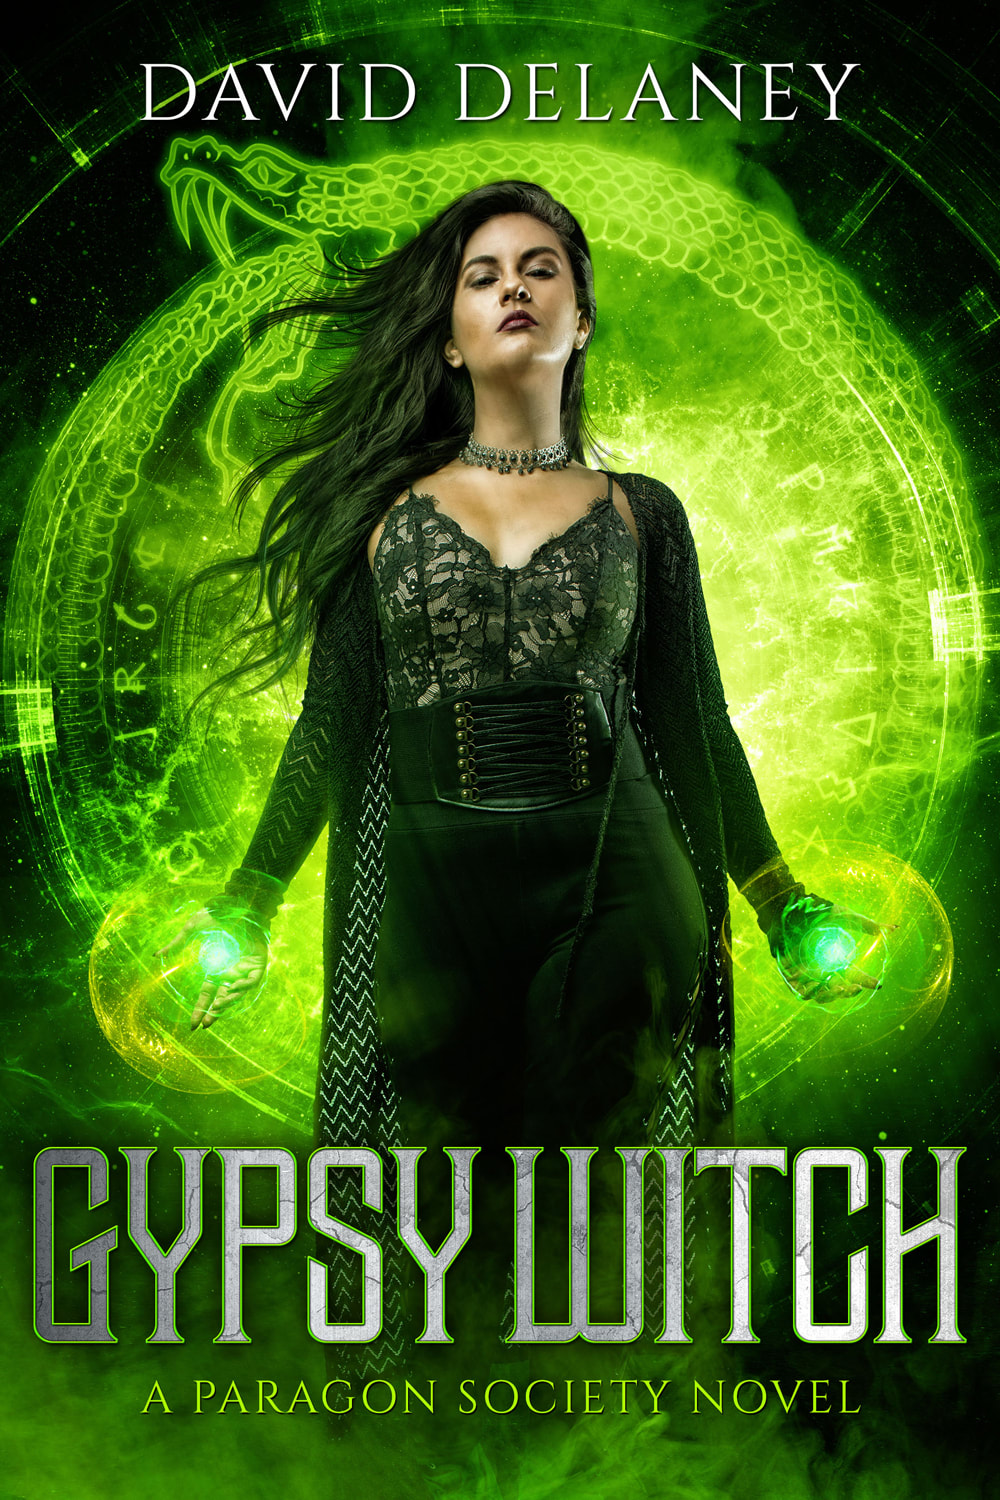 Urban Fantasy book cover design, ebook kindle amazon, David Delaney, Gypsy witch